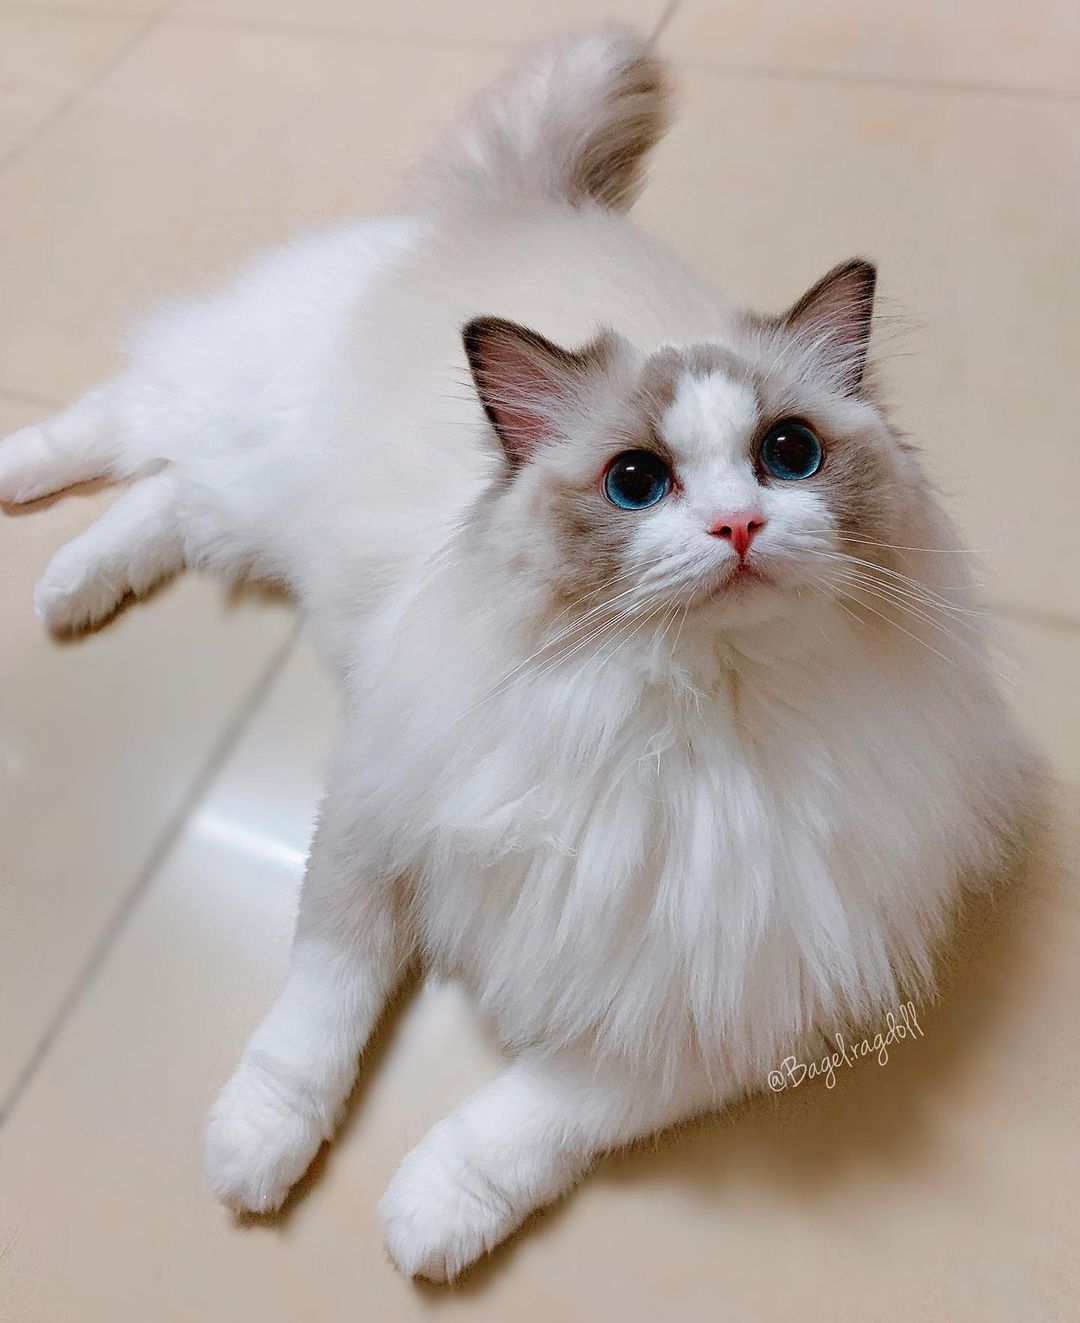 Khám phá về Mèo Ragdoll – Gã khổng lồ cực kì xinh đẹp